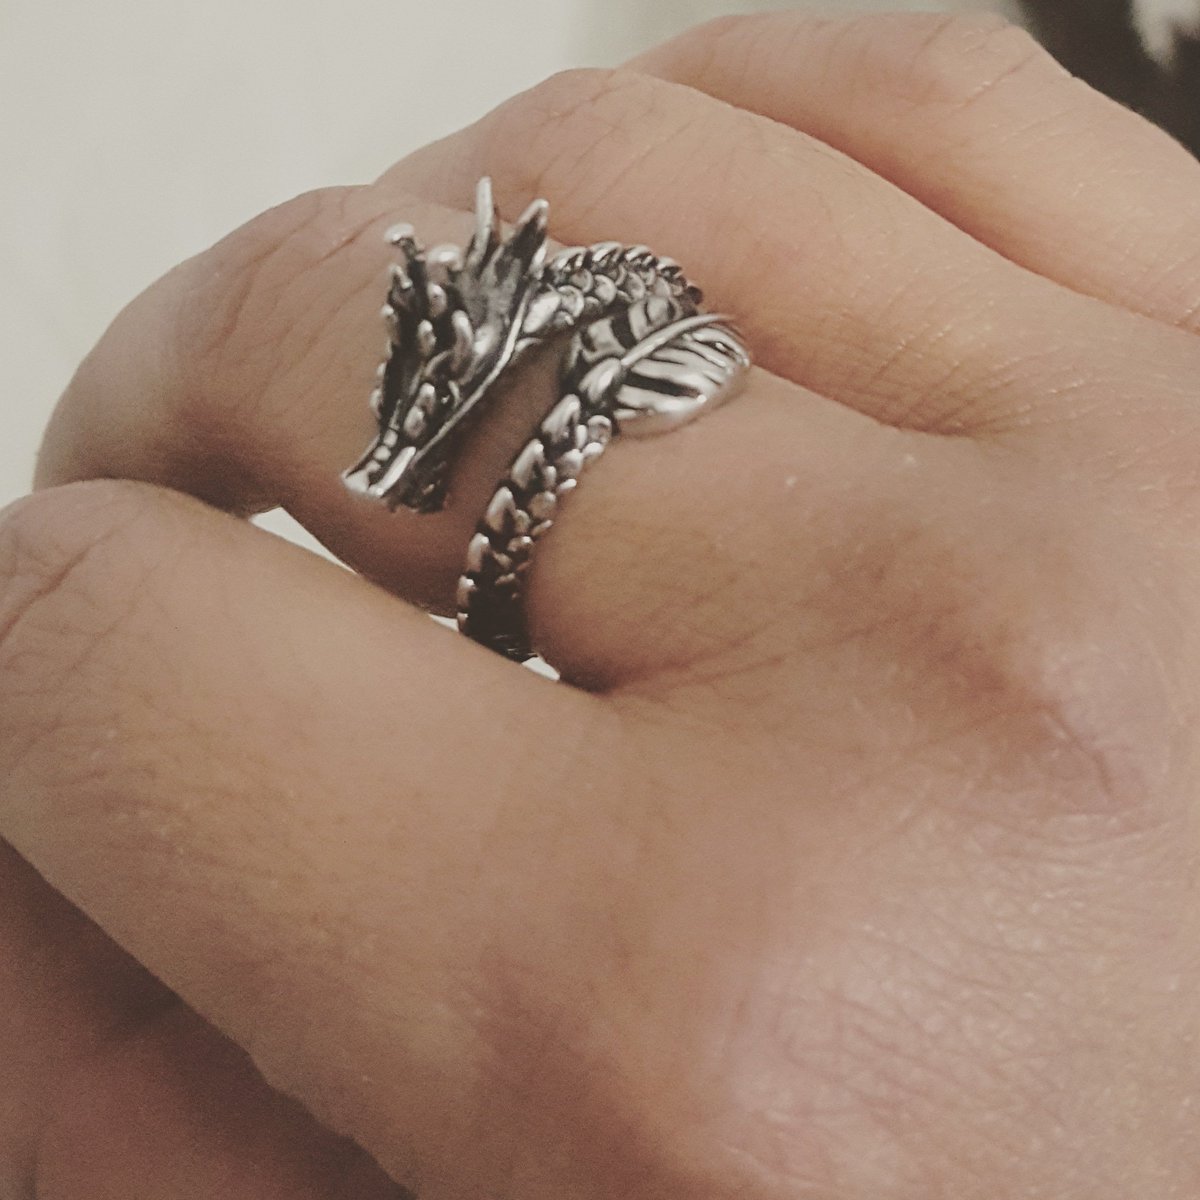 Es EL anillo 😍❤💕😍 regalo de cumpleaños adelantado de mi hermoso, adorable, increíble sobrino @abrahamuo él siempre sabe que me gusta. Soy una tía consentida y amada todos los días #lovenephew #lovefamily #ring #dragon #jewelry #bithdaypresent